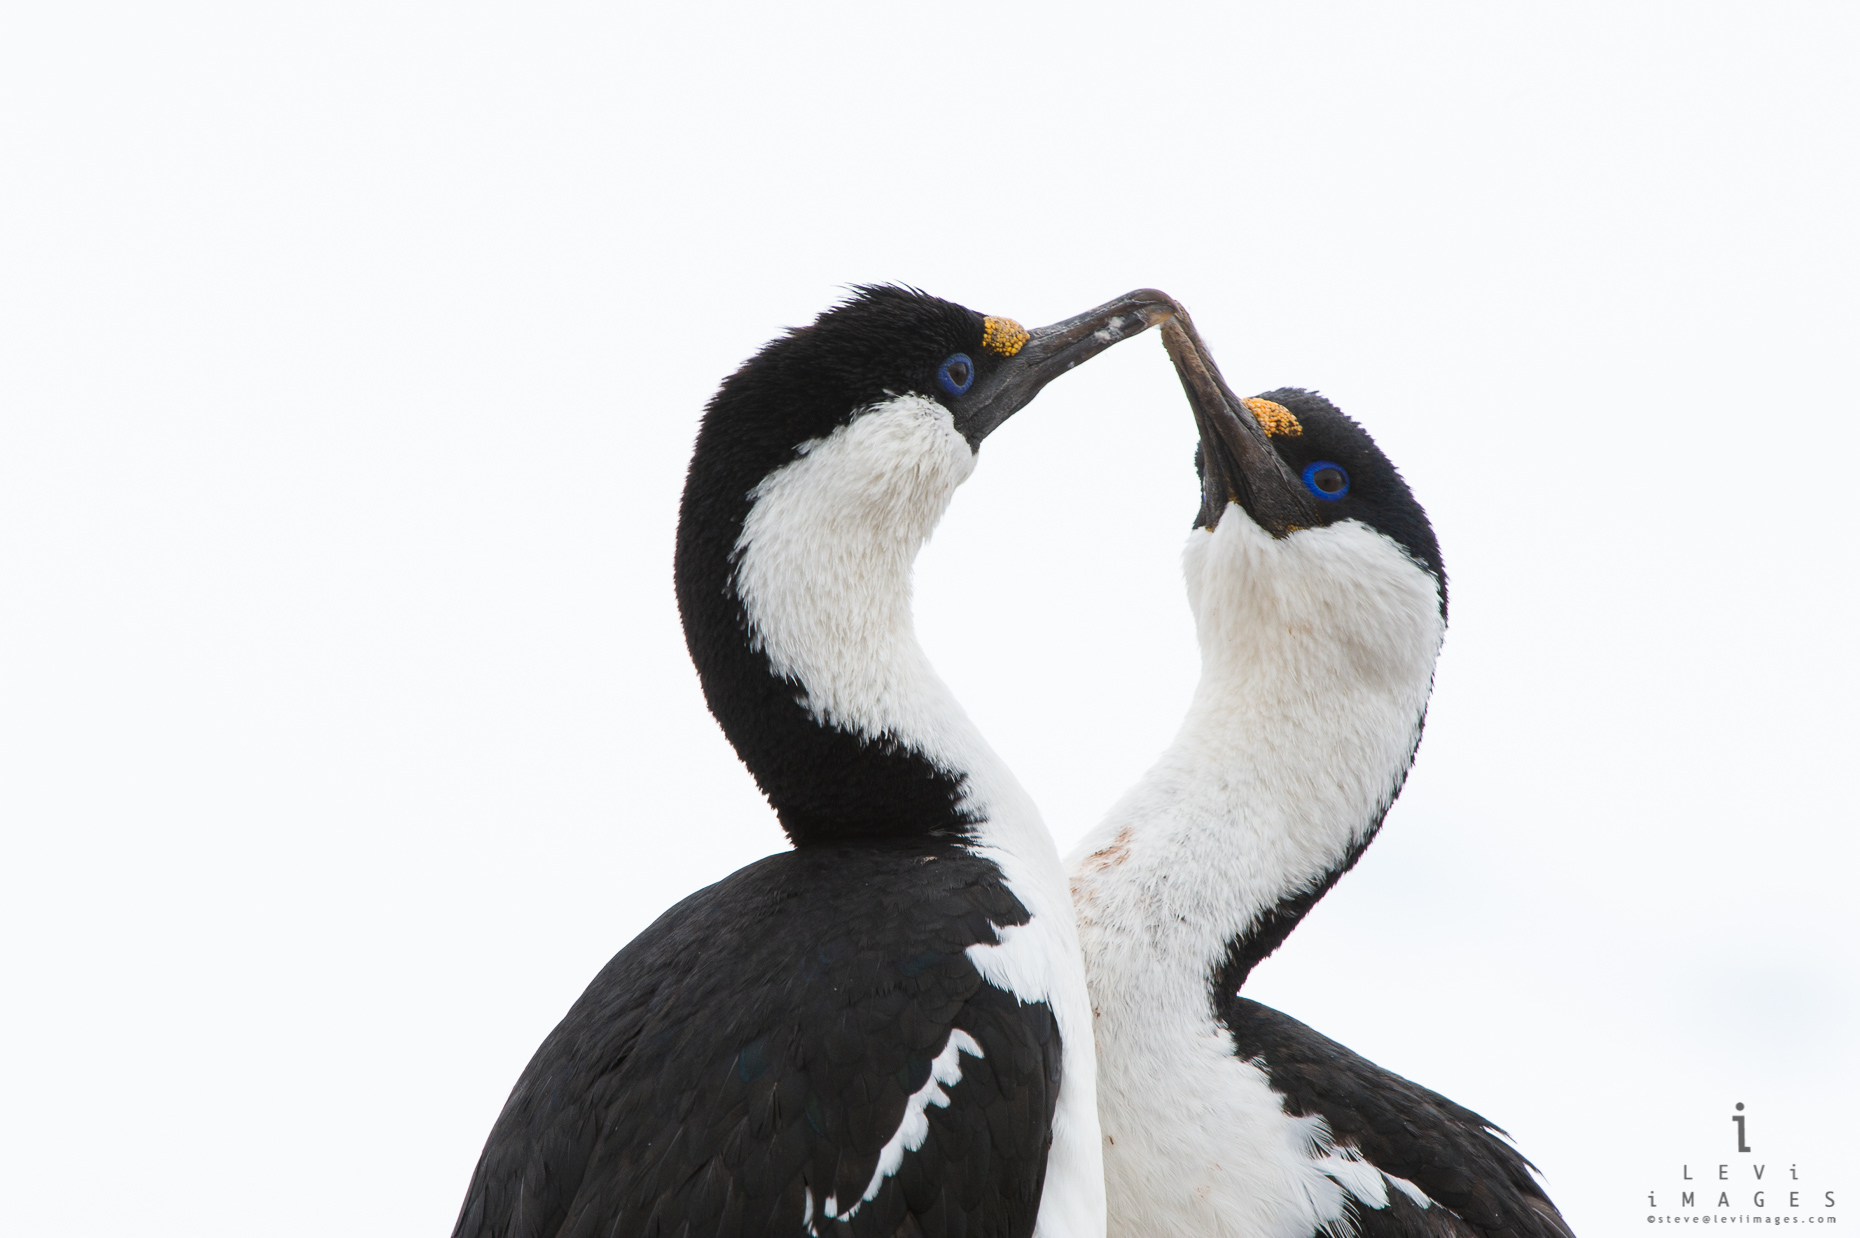 Imperial shag pair  (Leucocarbo atriceps) greeting. Antarctica